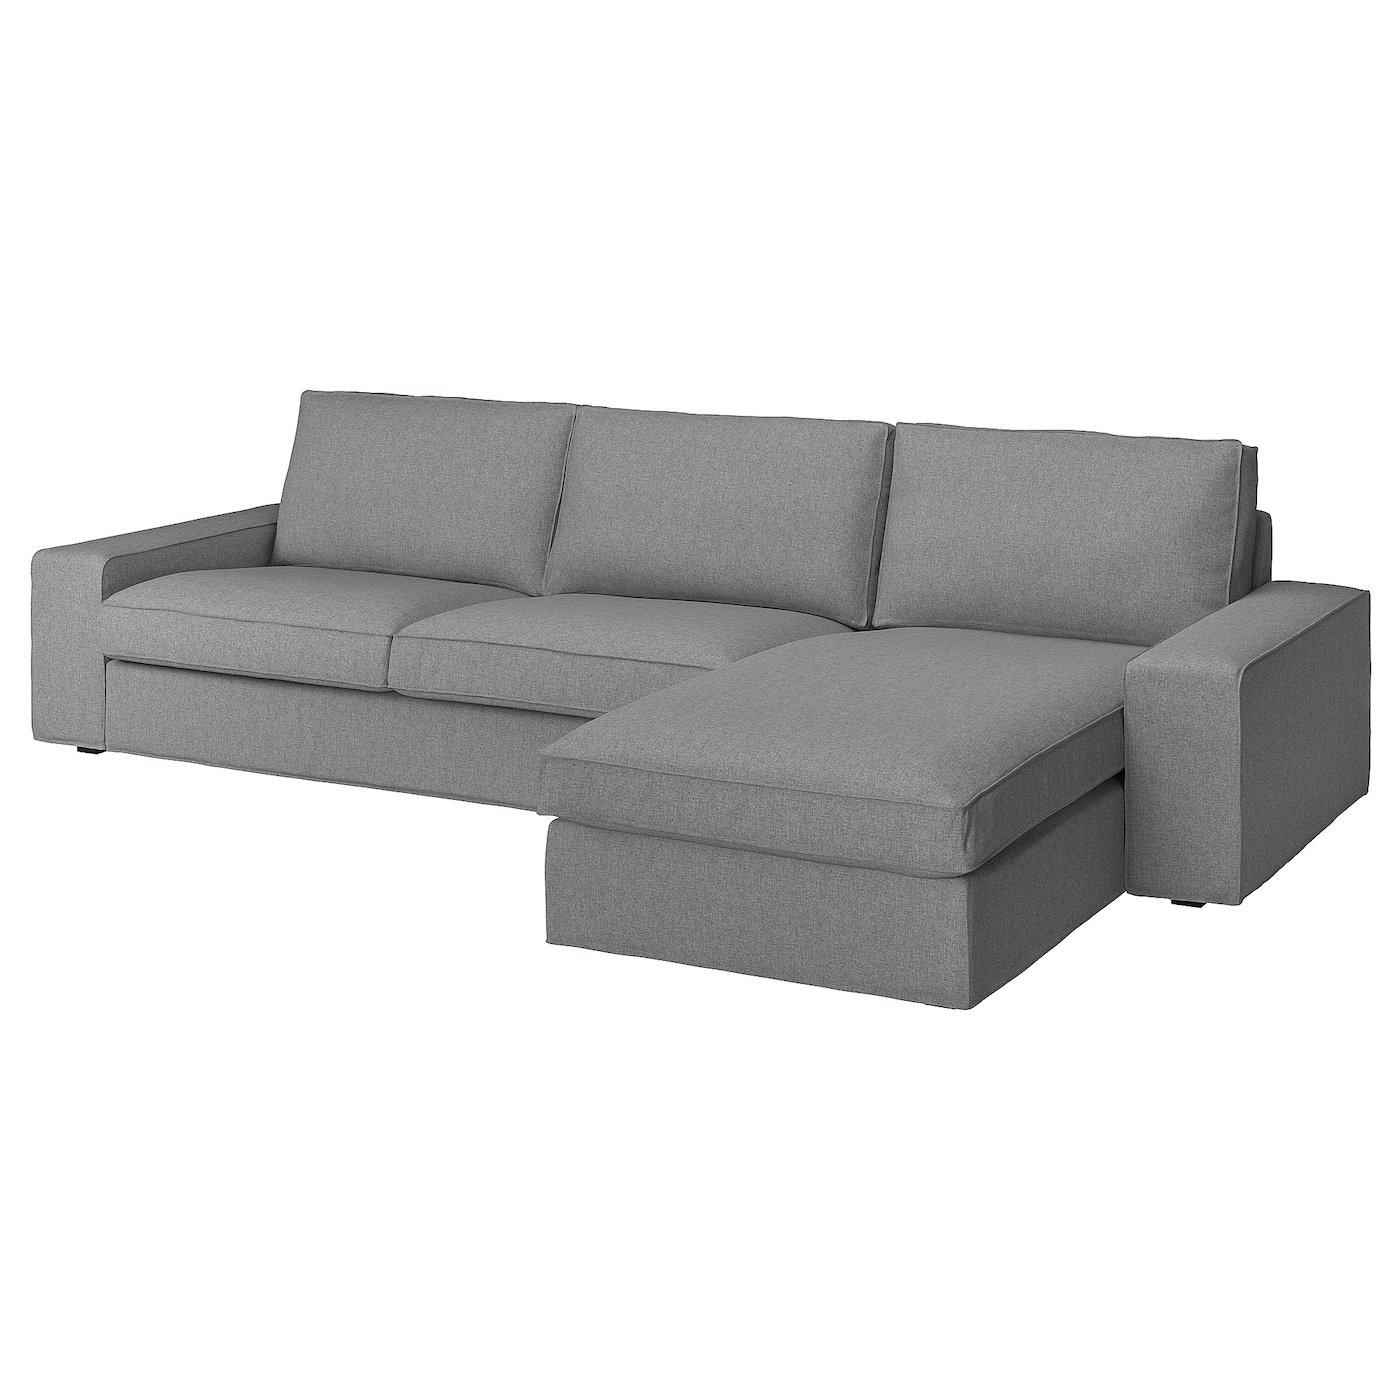 3-местный диван и шезлонг - IKEA KIVIK, 83x95/163x318см, серый/светло-серый, КИВИК ИКЕА